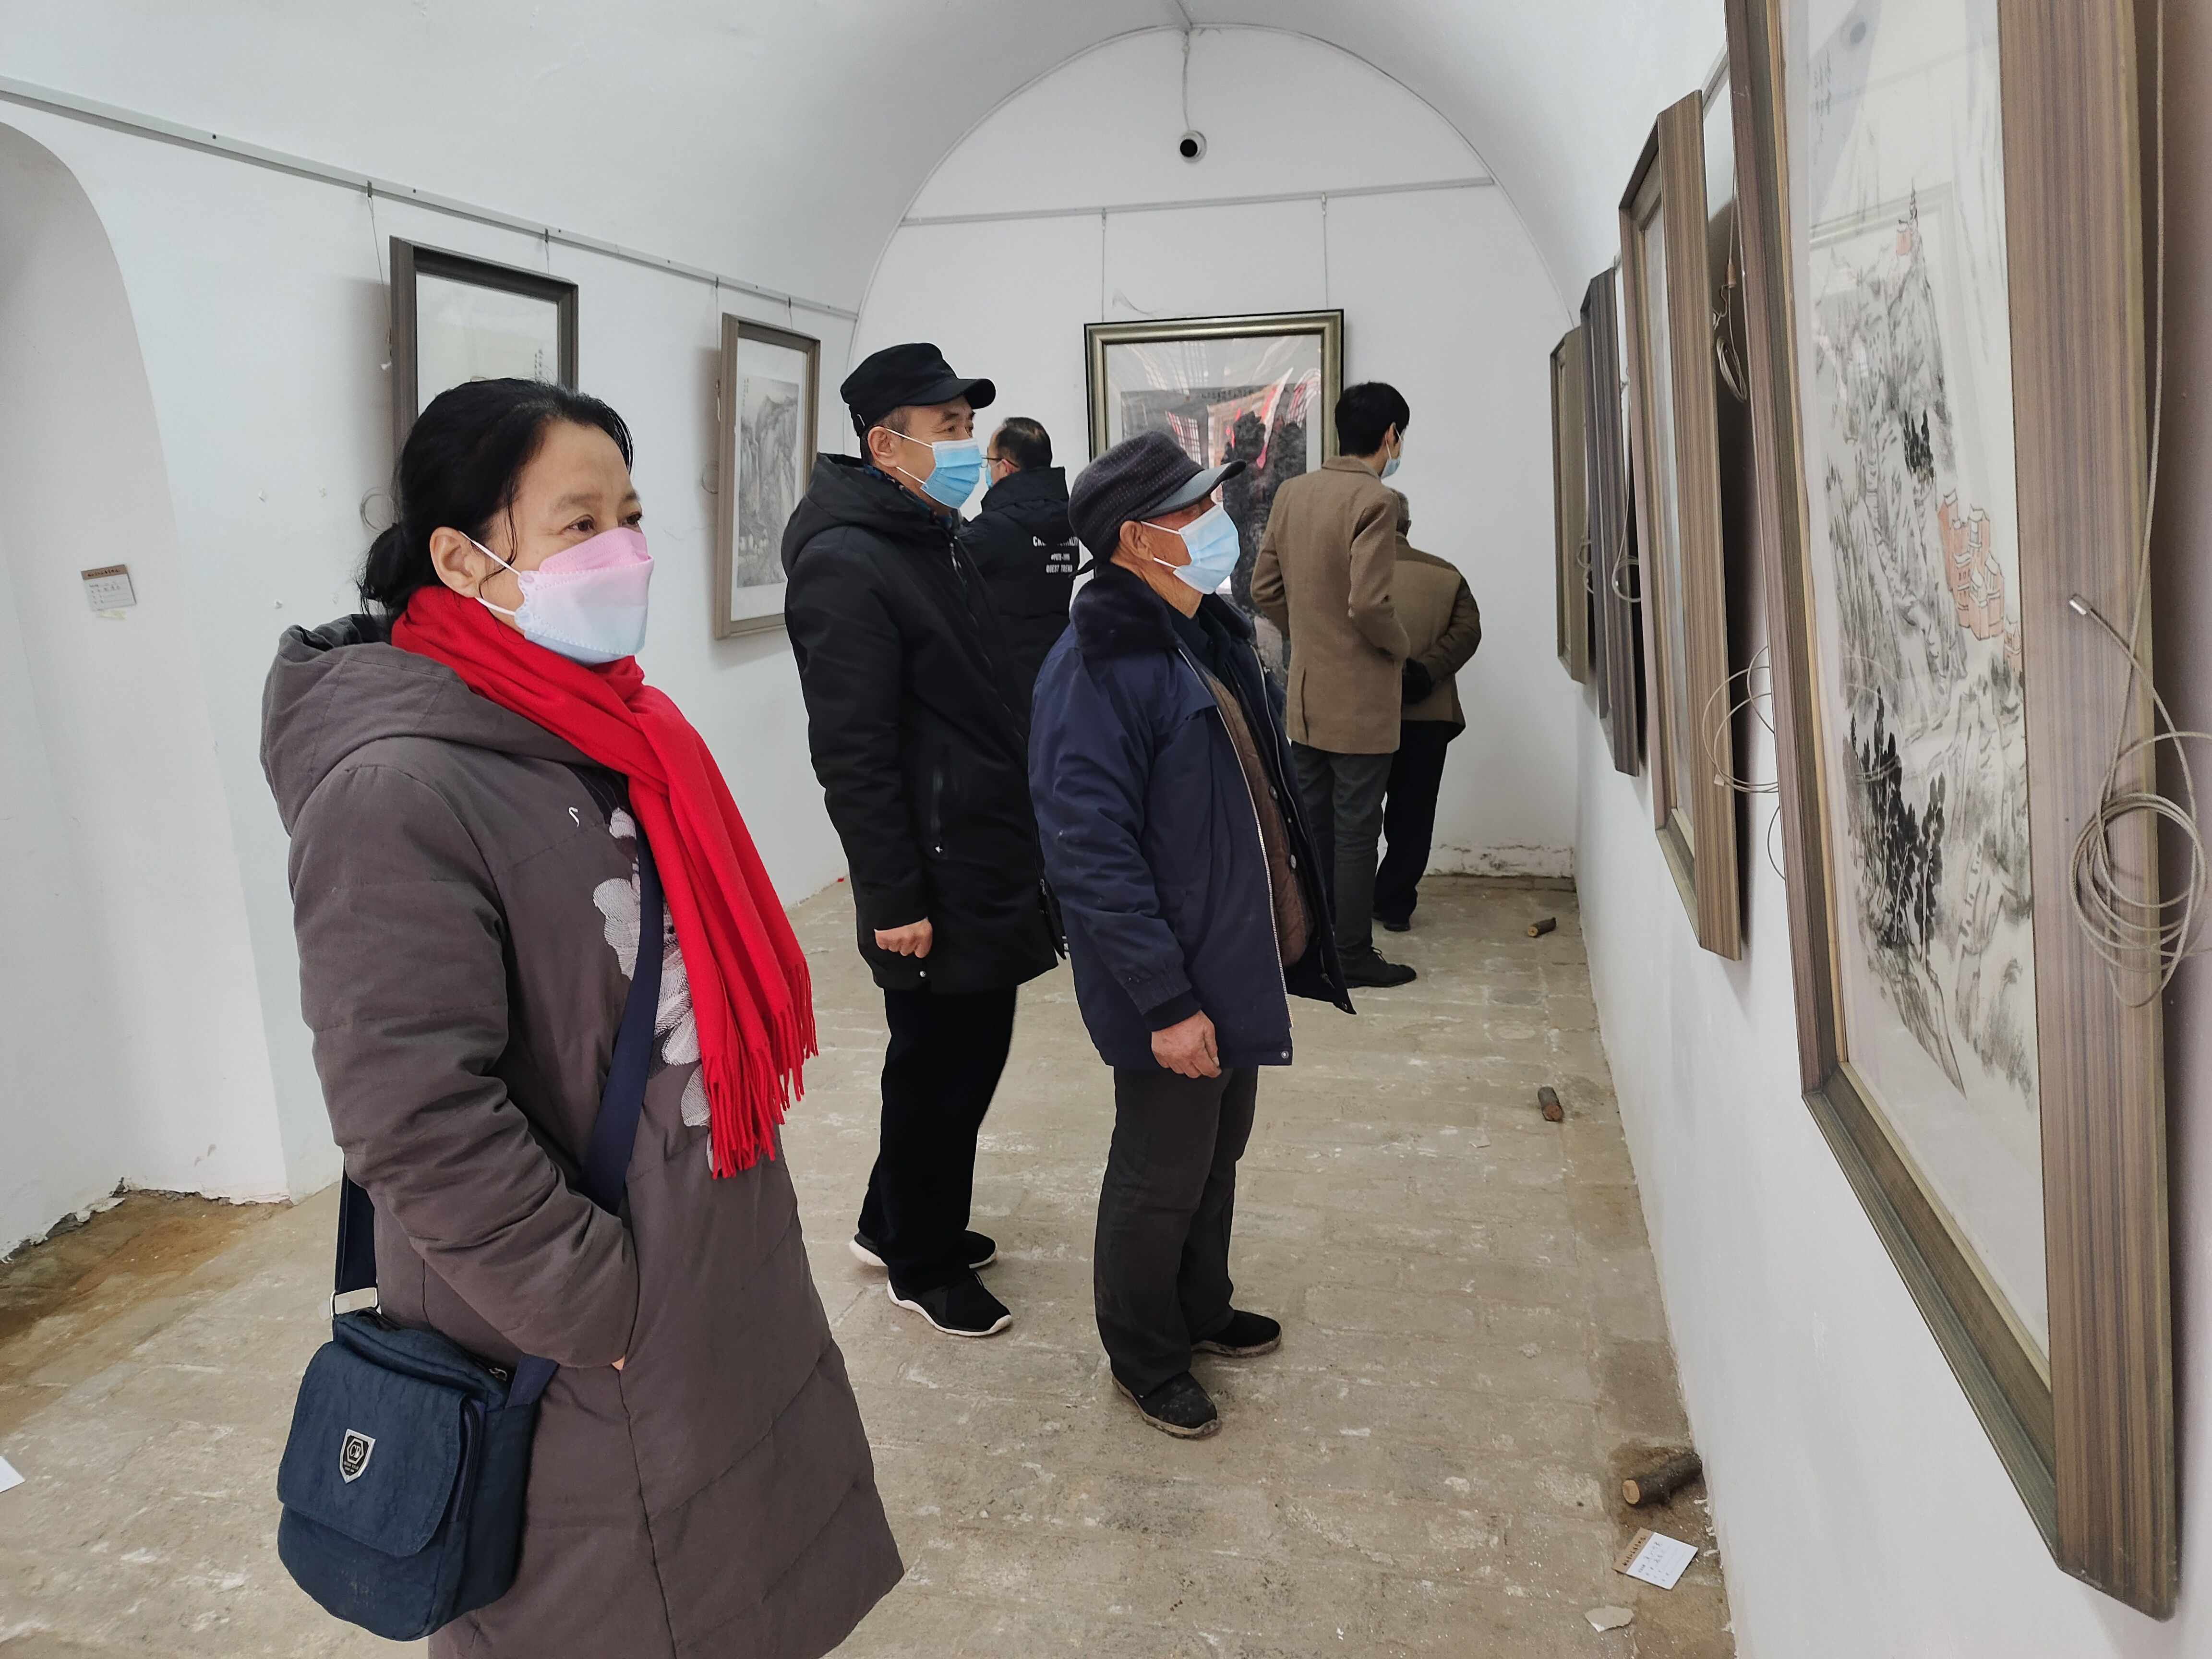  用艺术点亮乡村 “乡土故园”第三届迎春画展在临县举办